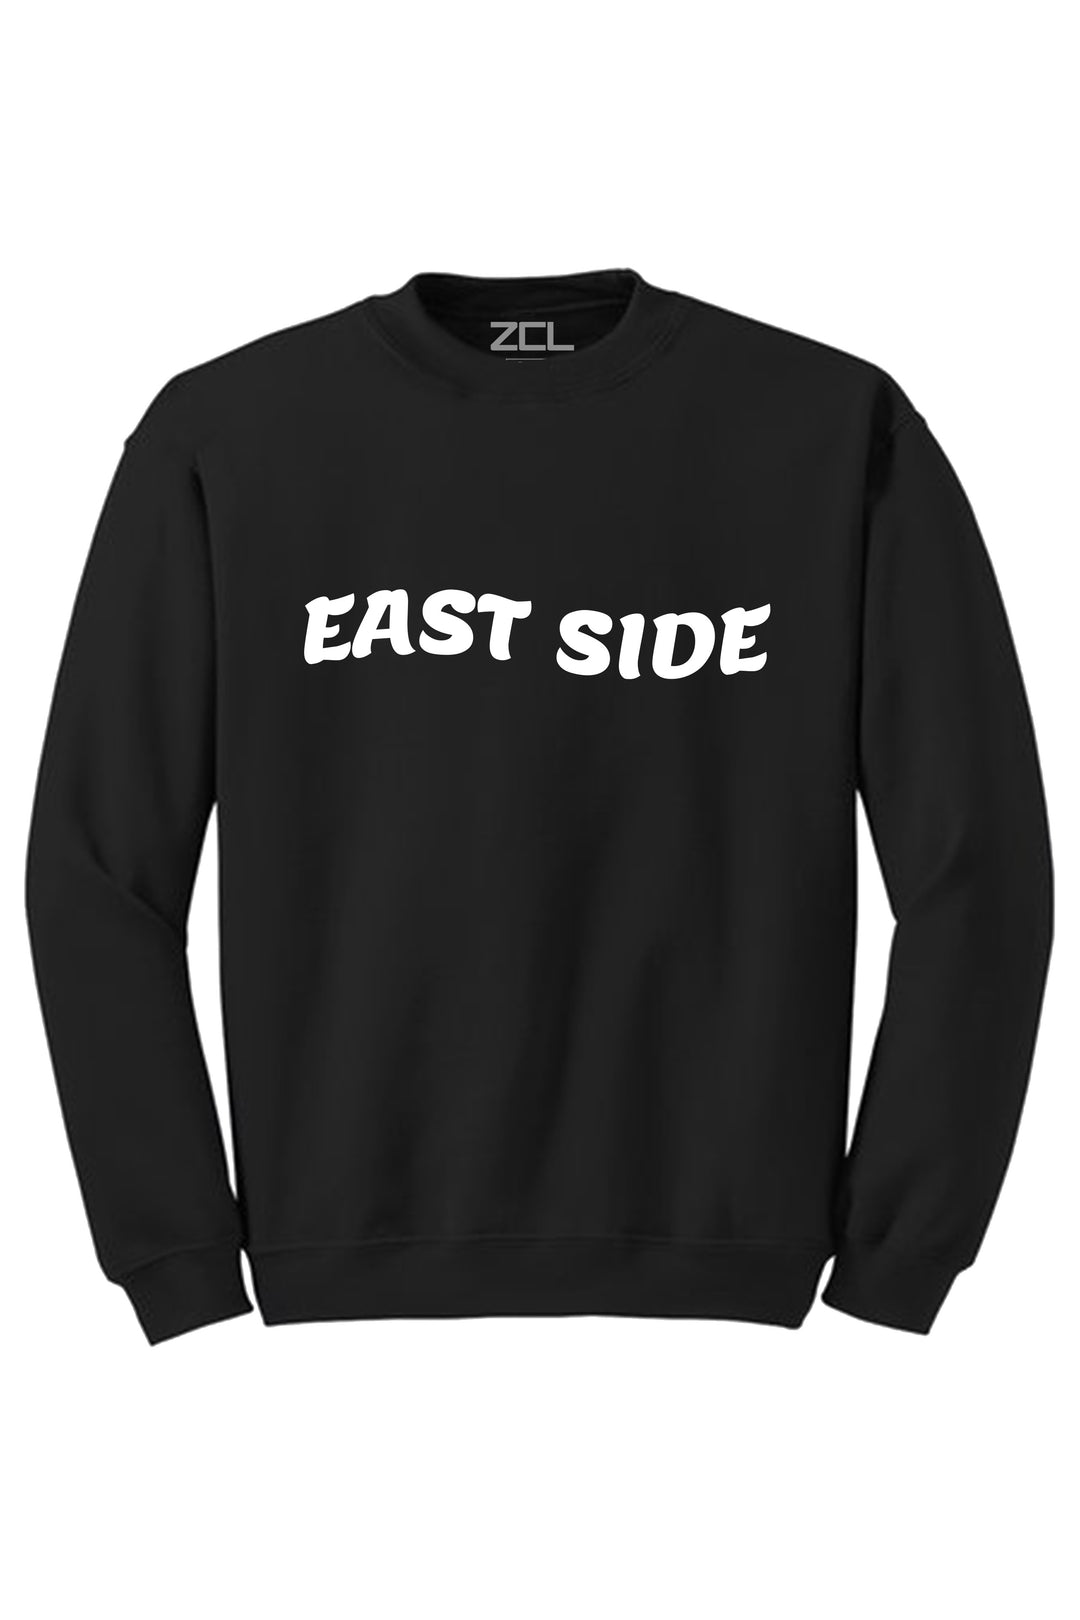 East Side Crewneck Sweatshirt (White Logo) - Zamage